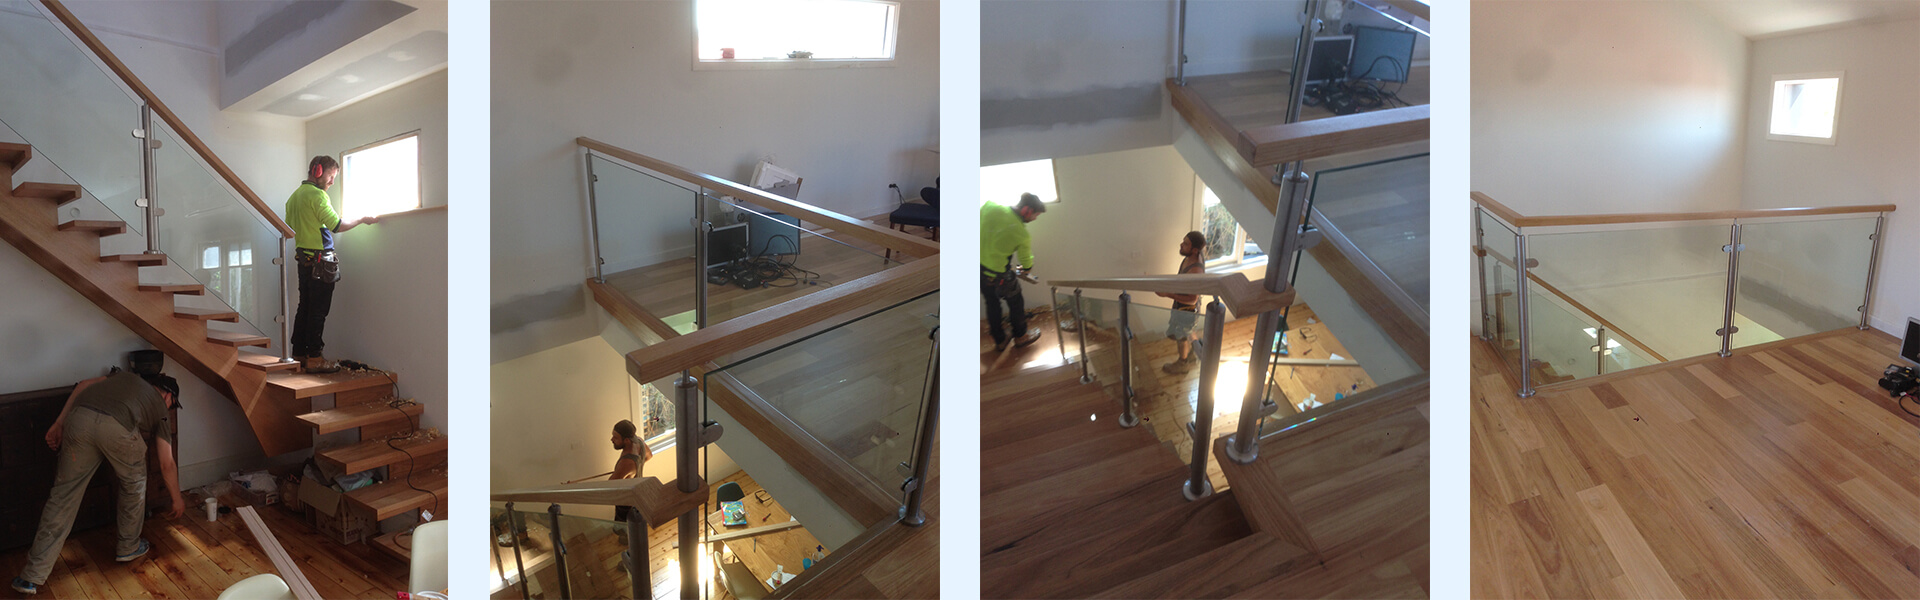 schody drewniane wewnętrzne proste bez podstopni, nakładane, balustrady szklane, poręcze drewniane